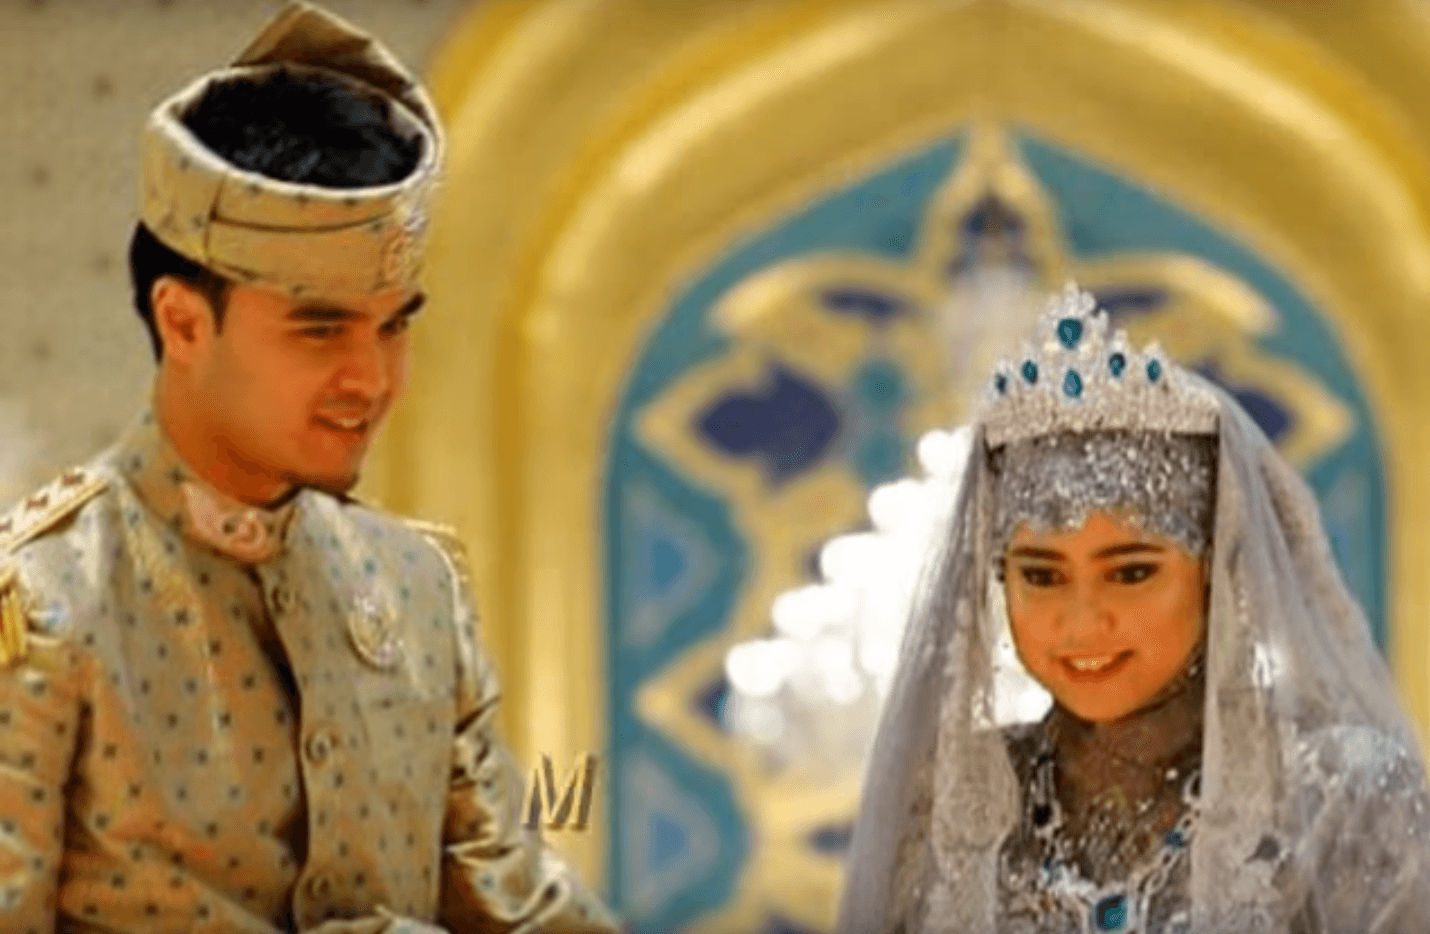 Princess Hajah Hafizah Sururul Bolkiah of Brunei and Pengiran Haji Muhammad Ruzaini 